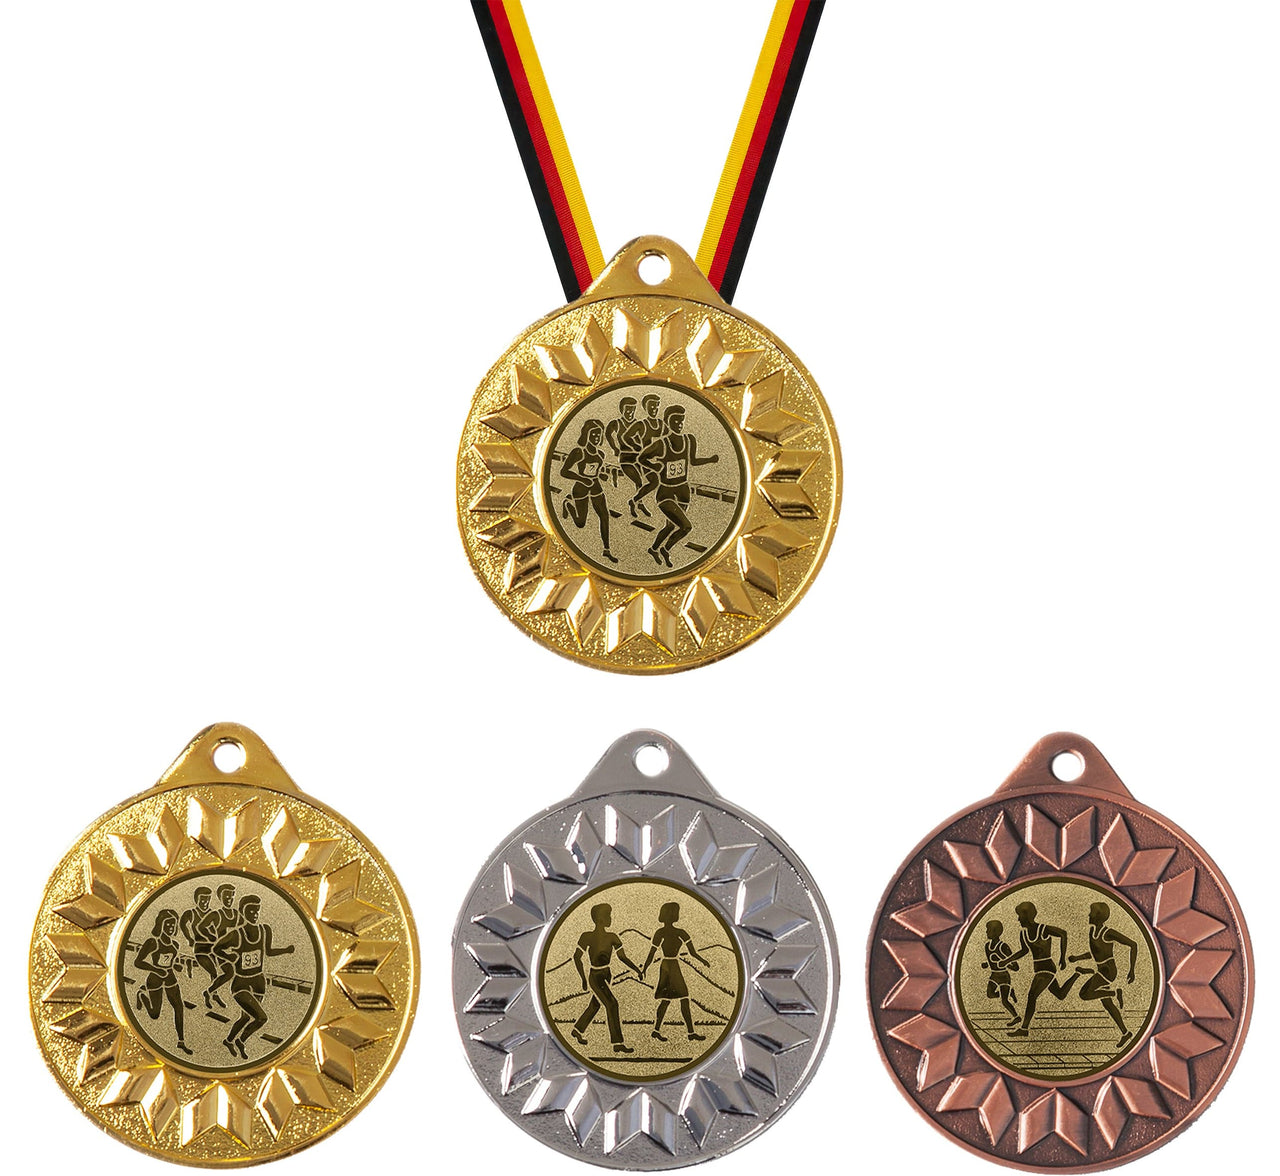 Fünf Medaillen Leipzig 50 mm PK79293g-E25 in Gold, Silber und Bronze, jede mit verschiedenen athletischen Figuren darauf geprägt, hängen an mehrfarbigen Bändern.